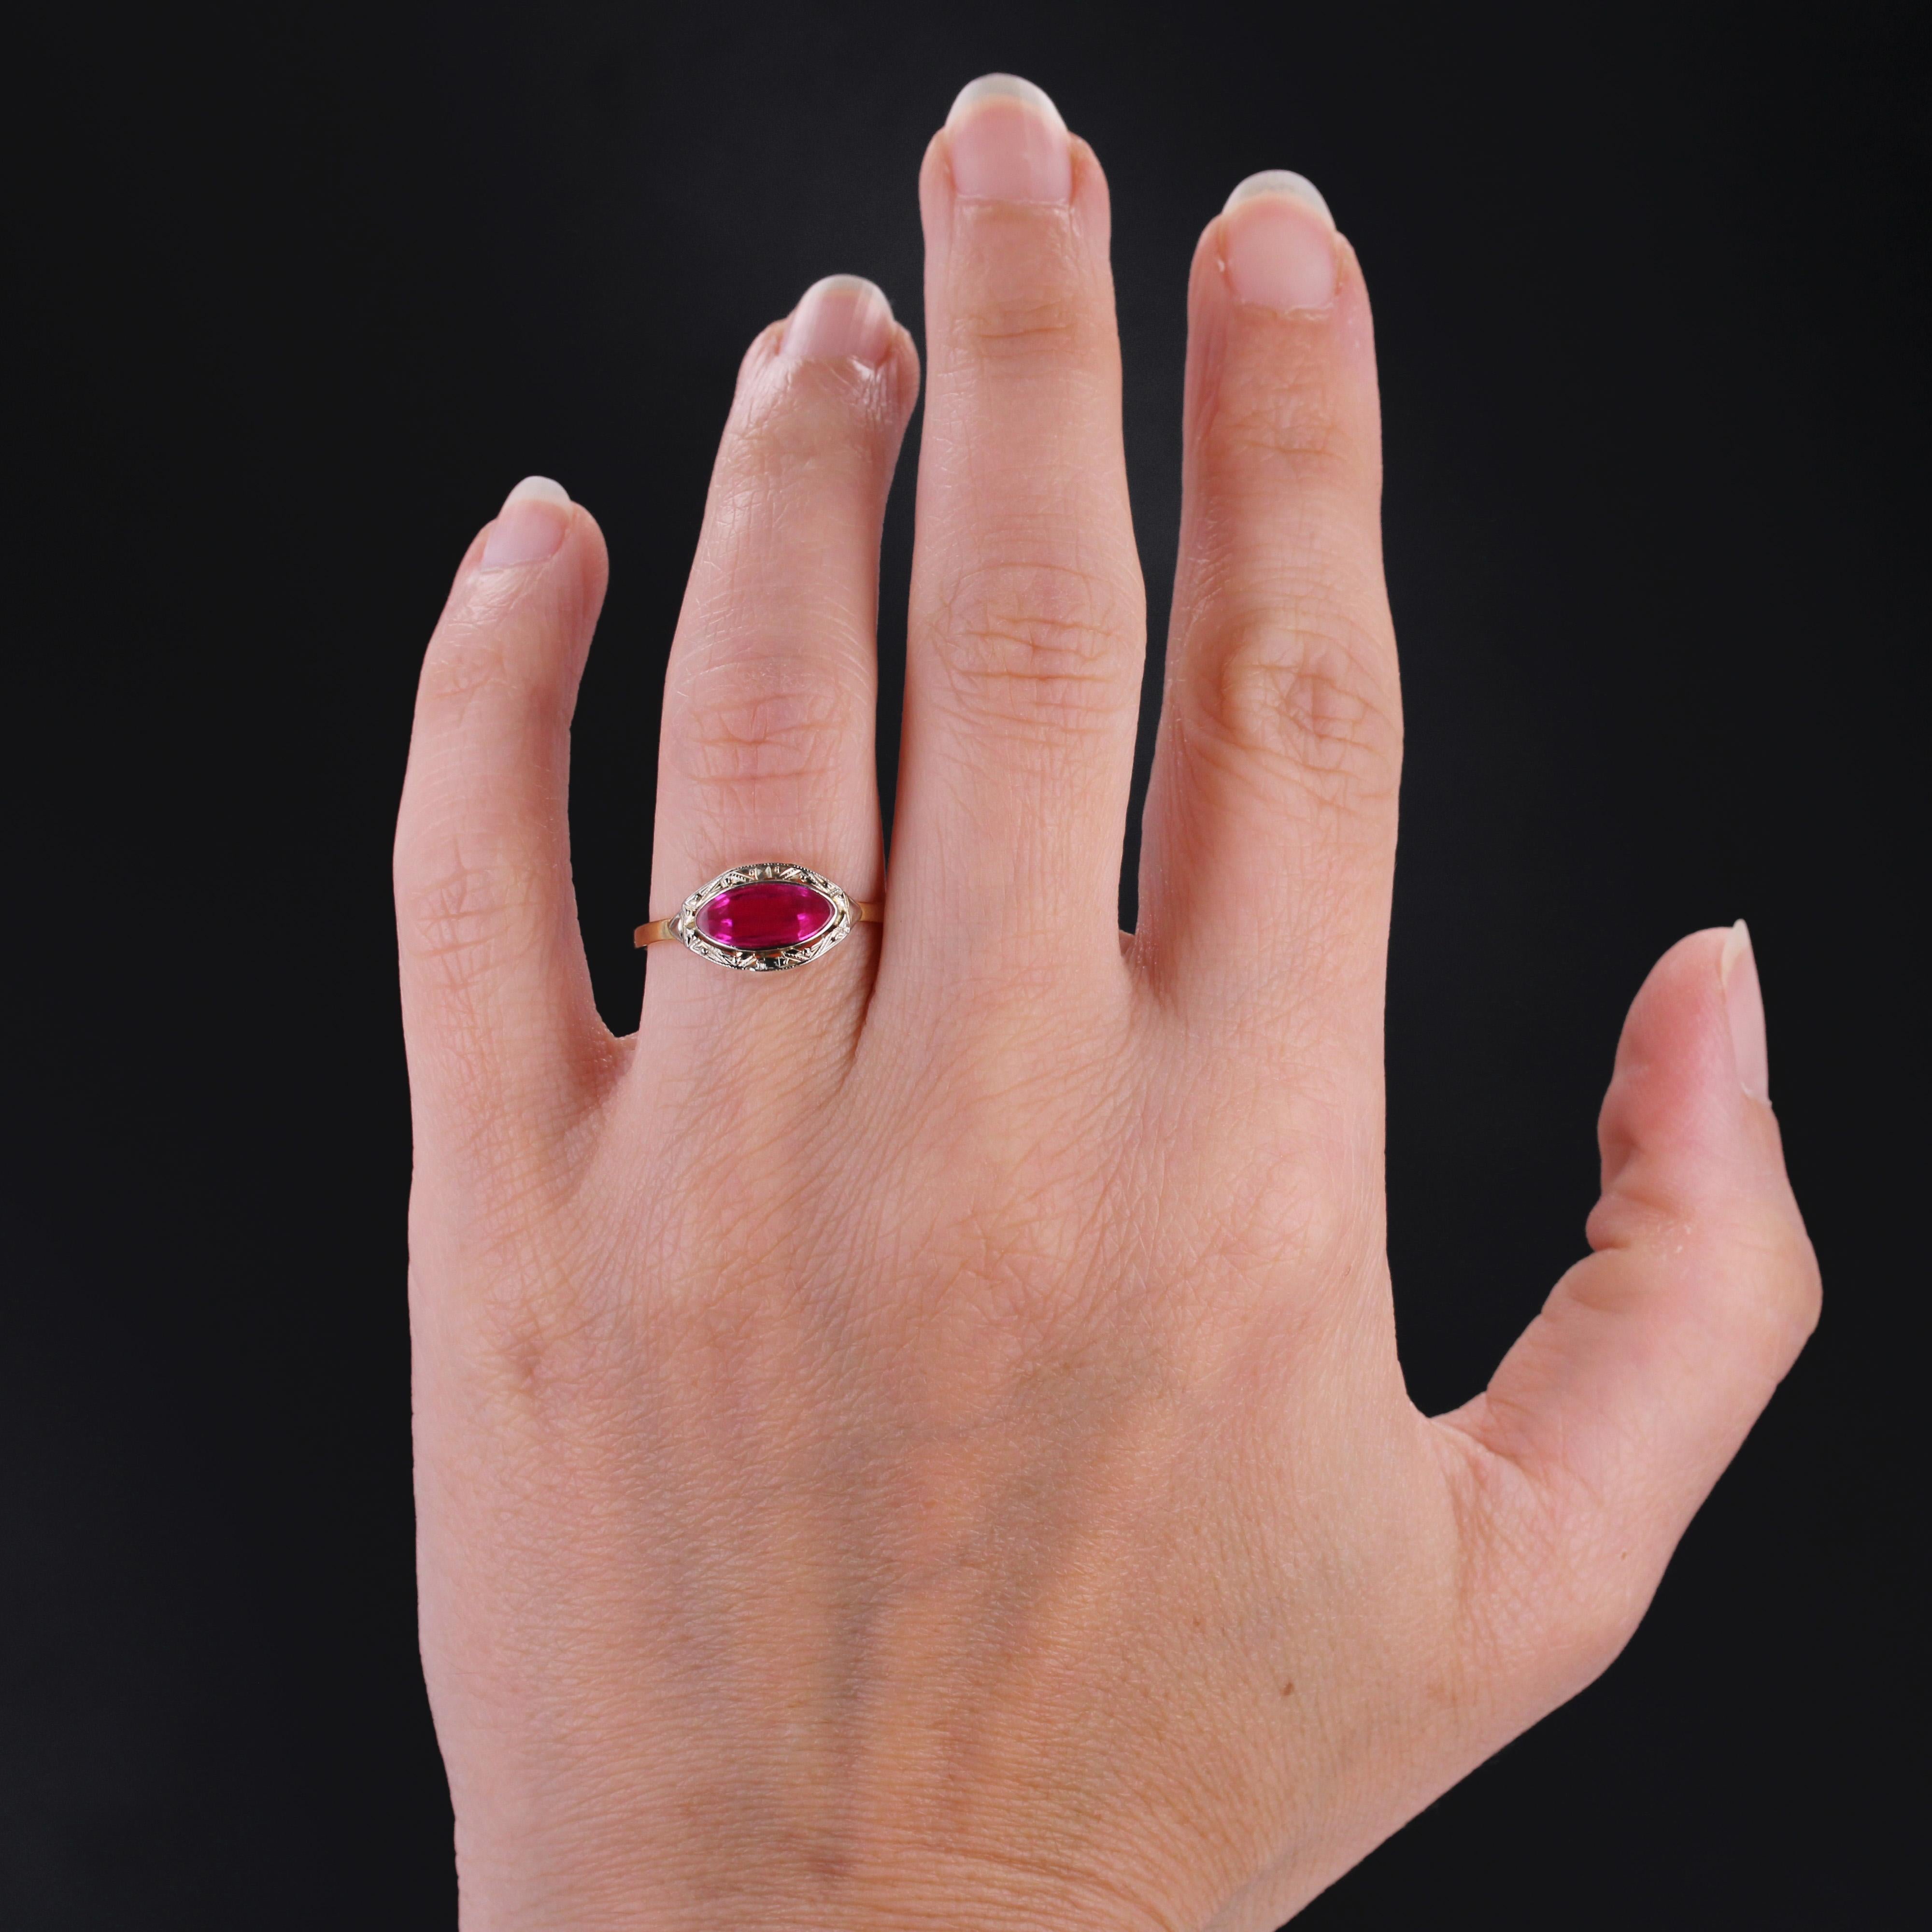 Ring aus 18 Karat Gelbgold, Adlerkopfpunze.
Antiker Ring mit einem flachen, navettenförmigen synthetischen Rubin in einer ziselierten Fassung.
Höhe: ca. 7,5 mm, Breite: ca. 13,5 mm, Dicke: ca. 2,6 mm, Breite des Rings an der Basis: ca. 1,1